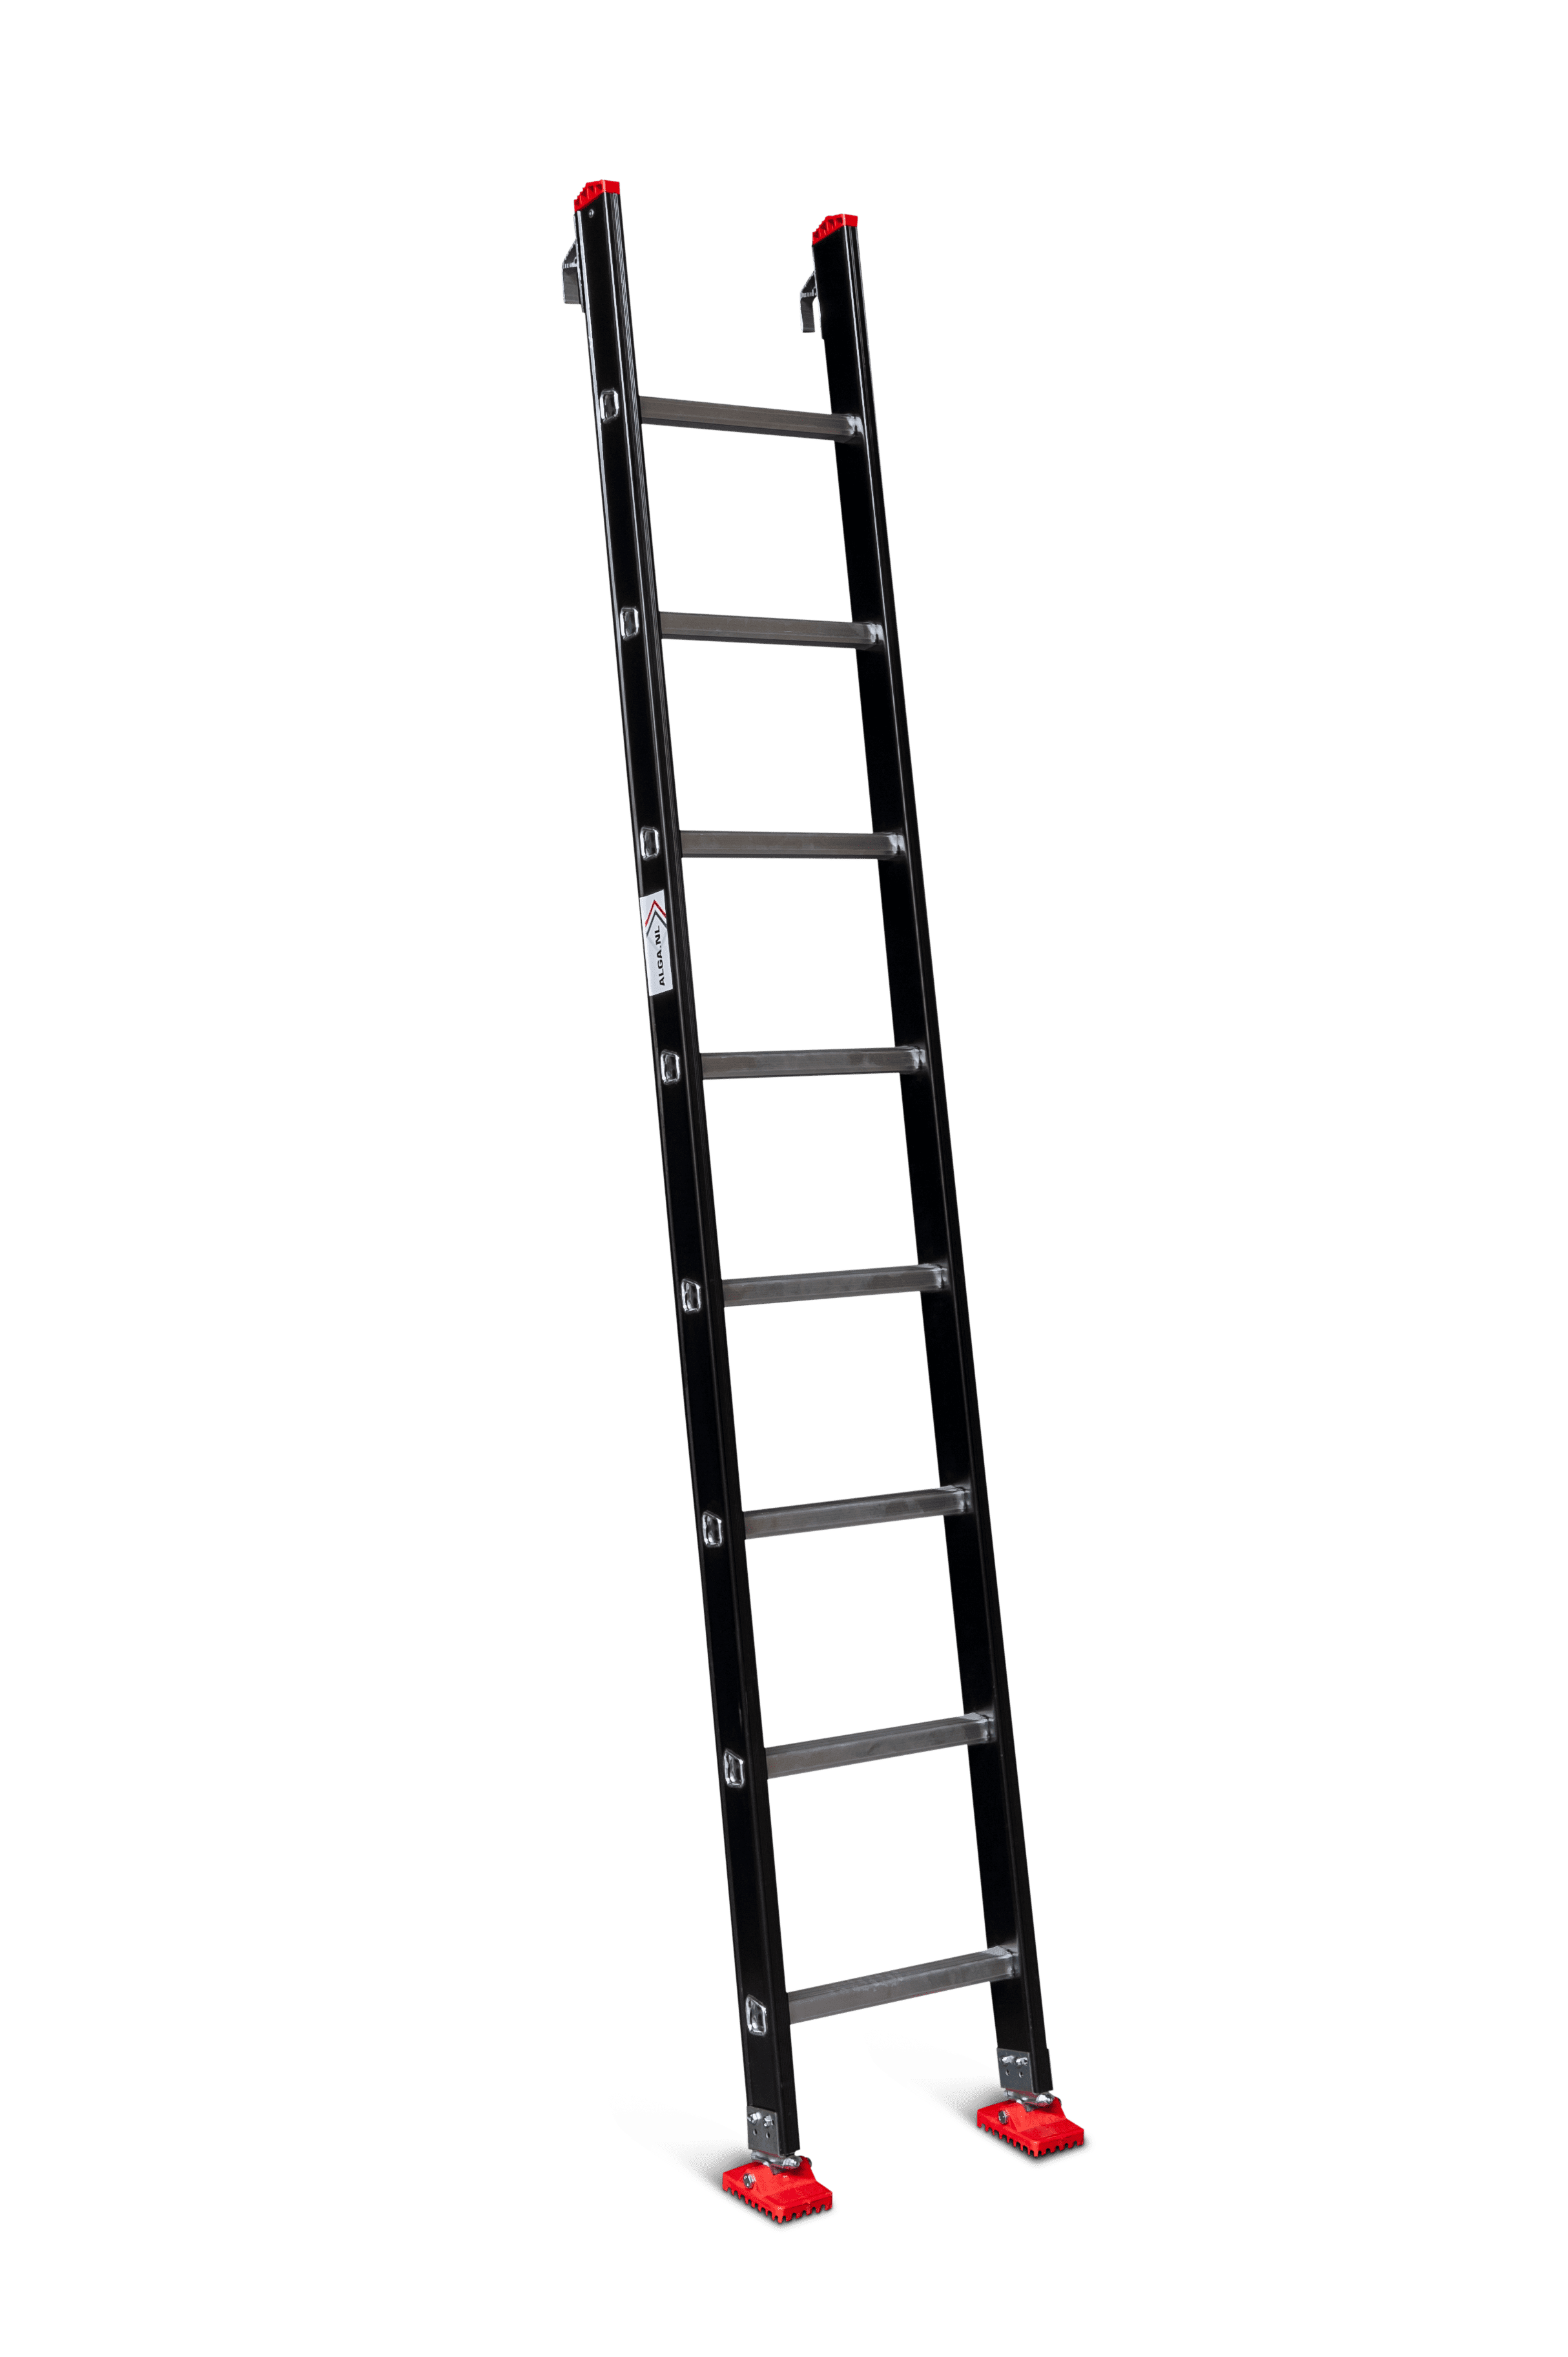 Veeg voorkomen zijn Enkele ladder met ladderhaken